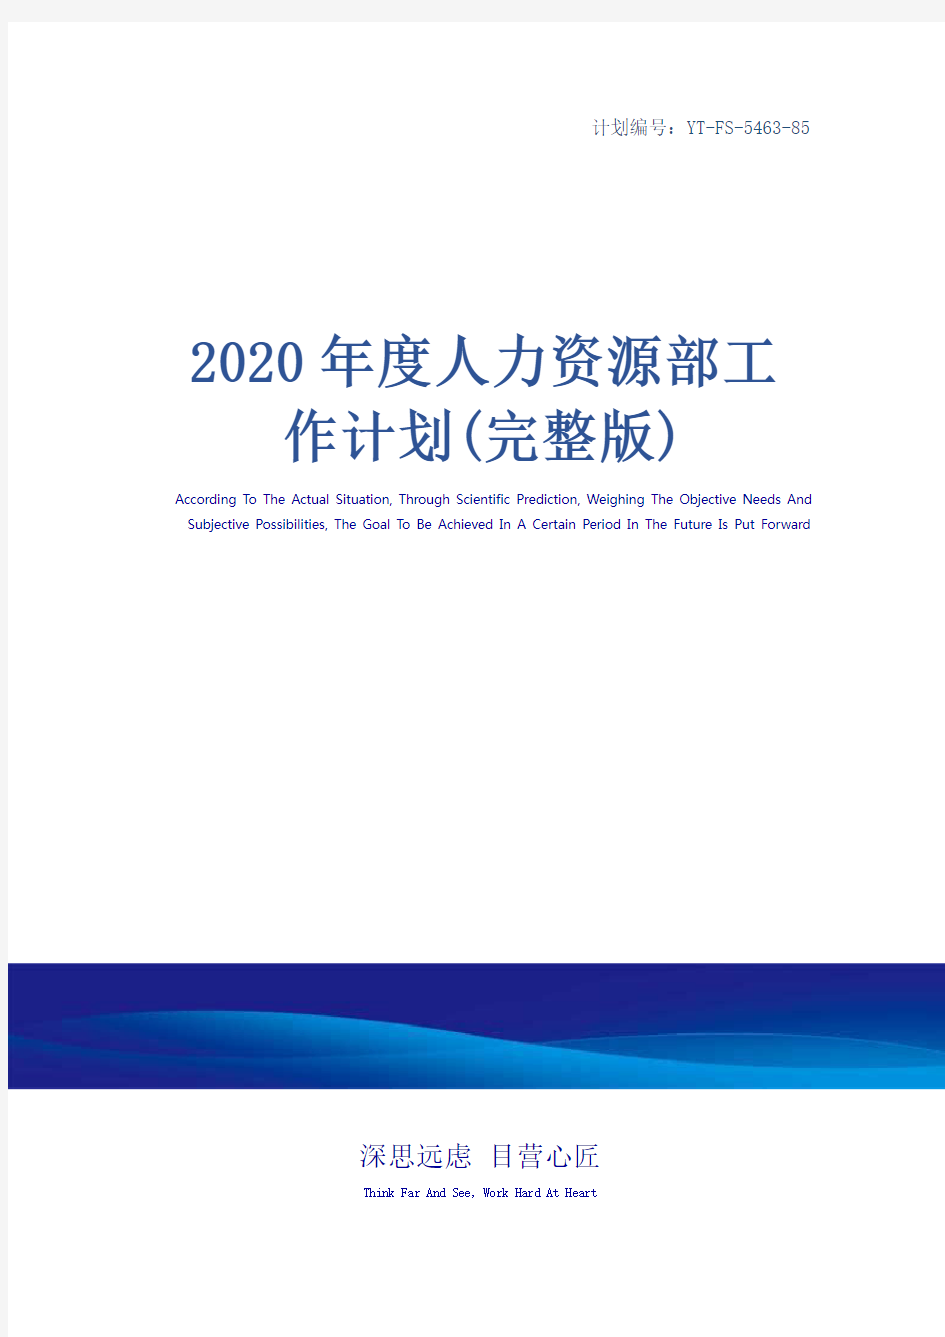 2020年度人力资源部工作计划(完整版)